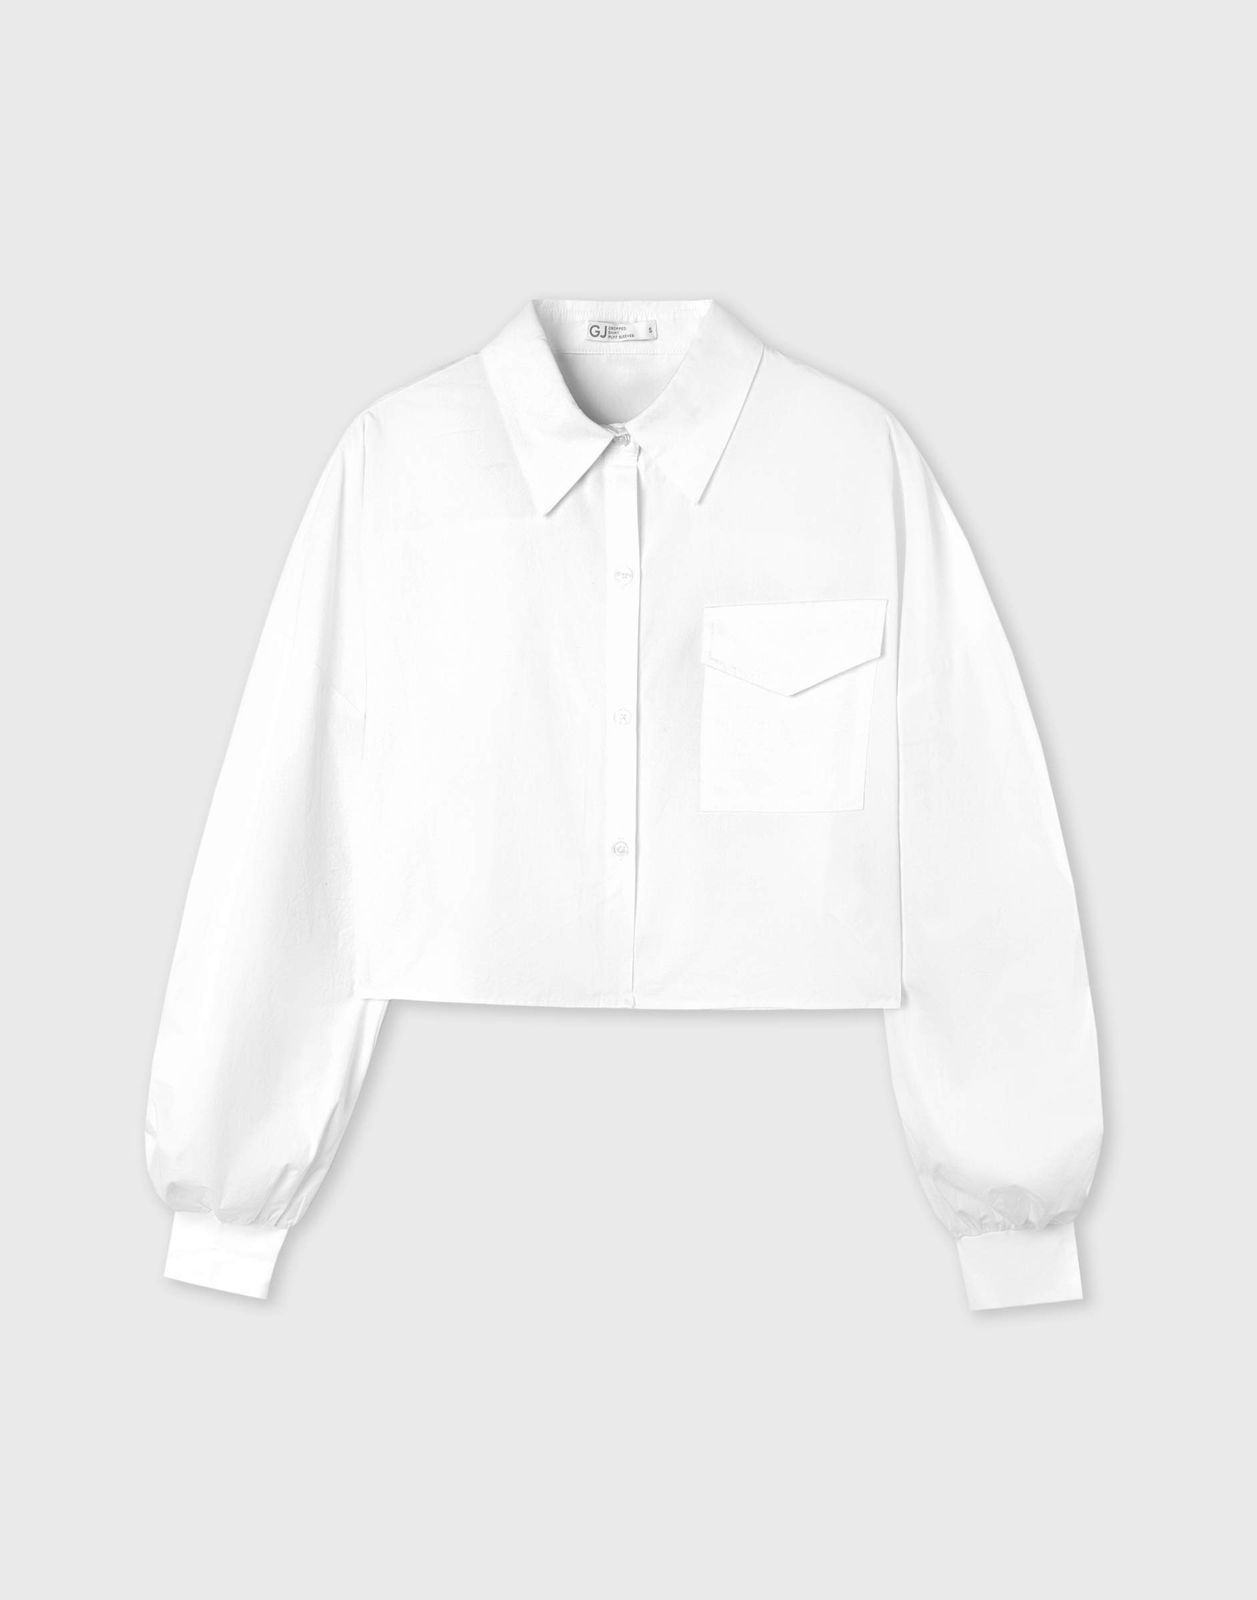 Рубашка женская Gloria Jeans GWT003435 белый XS/164